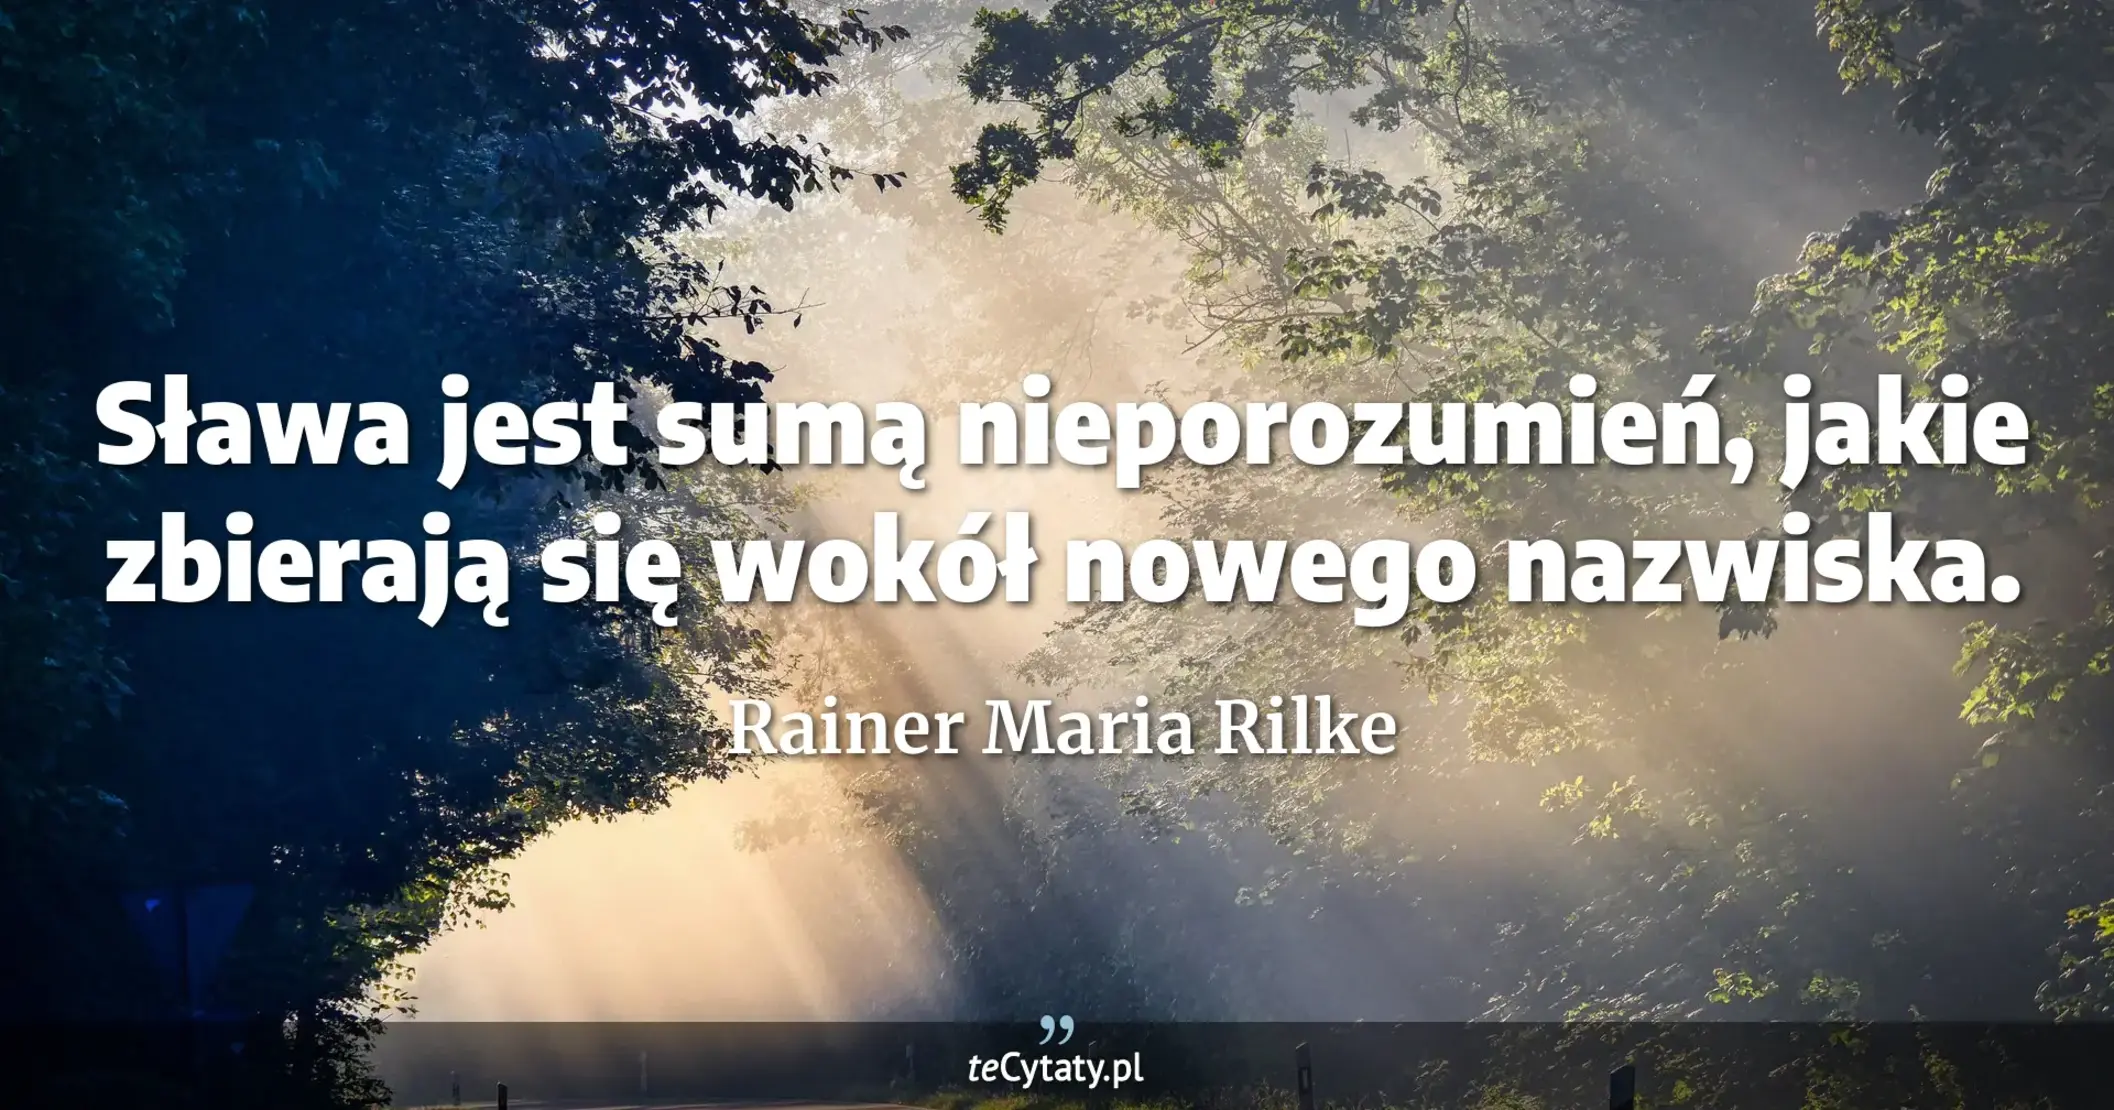 Sława jest sumą nieporozumień, jakie zbierają się wokół nowego nazwiska. - Rainer Maria Rilke